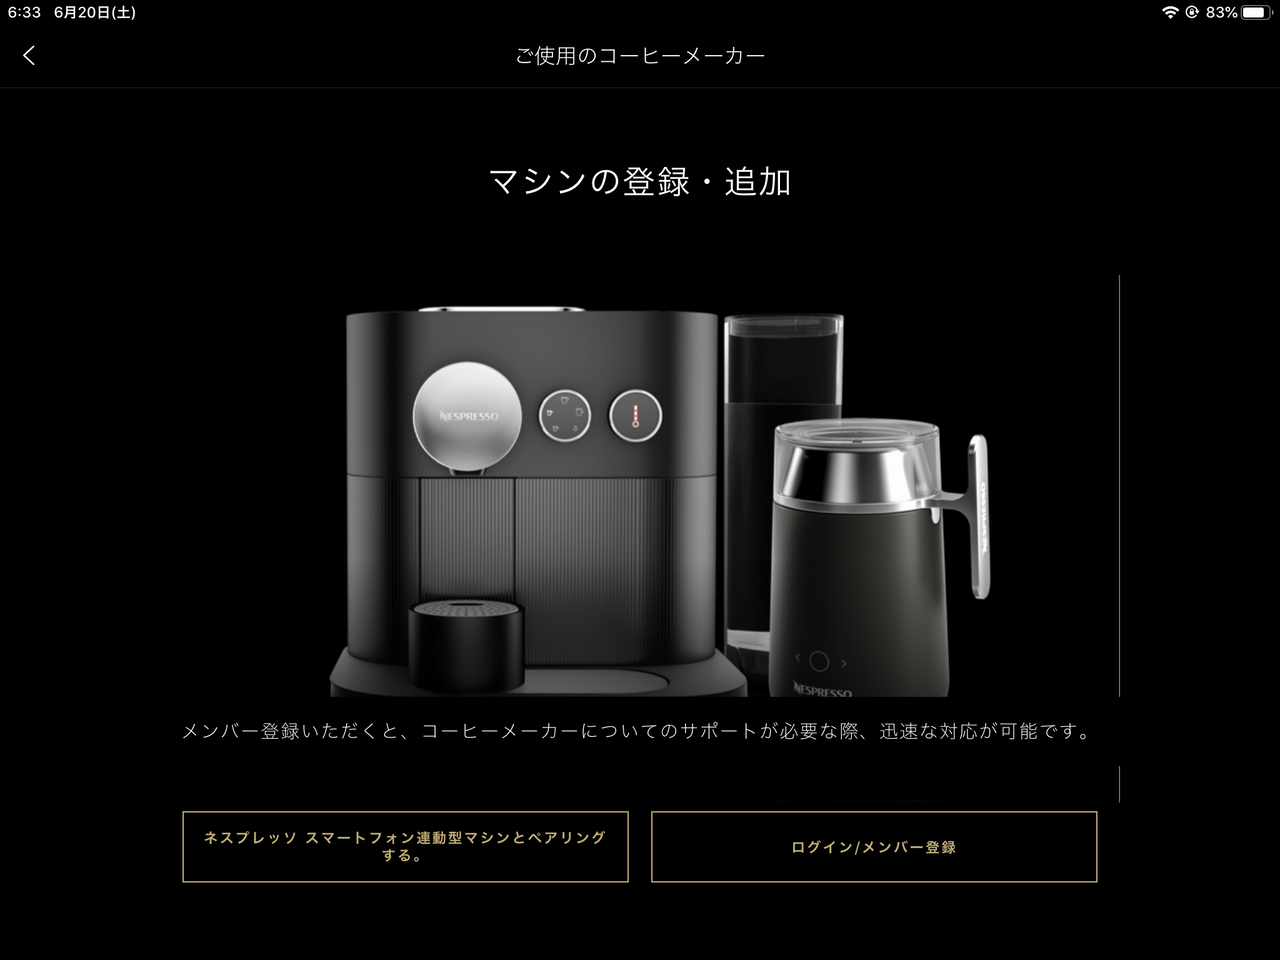 最新デザインの ネスプレッソ エアロチーノバリスタ - コーヒーメーカー - alrc.asia